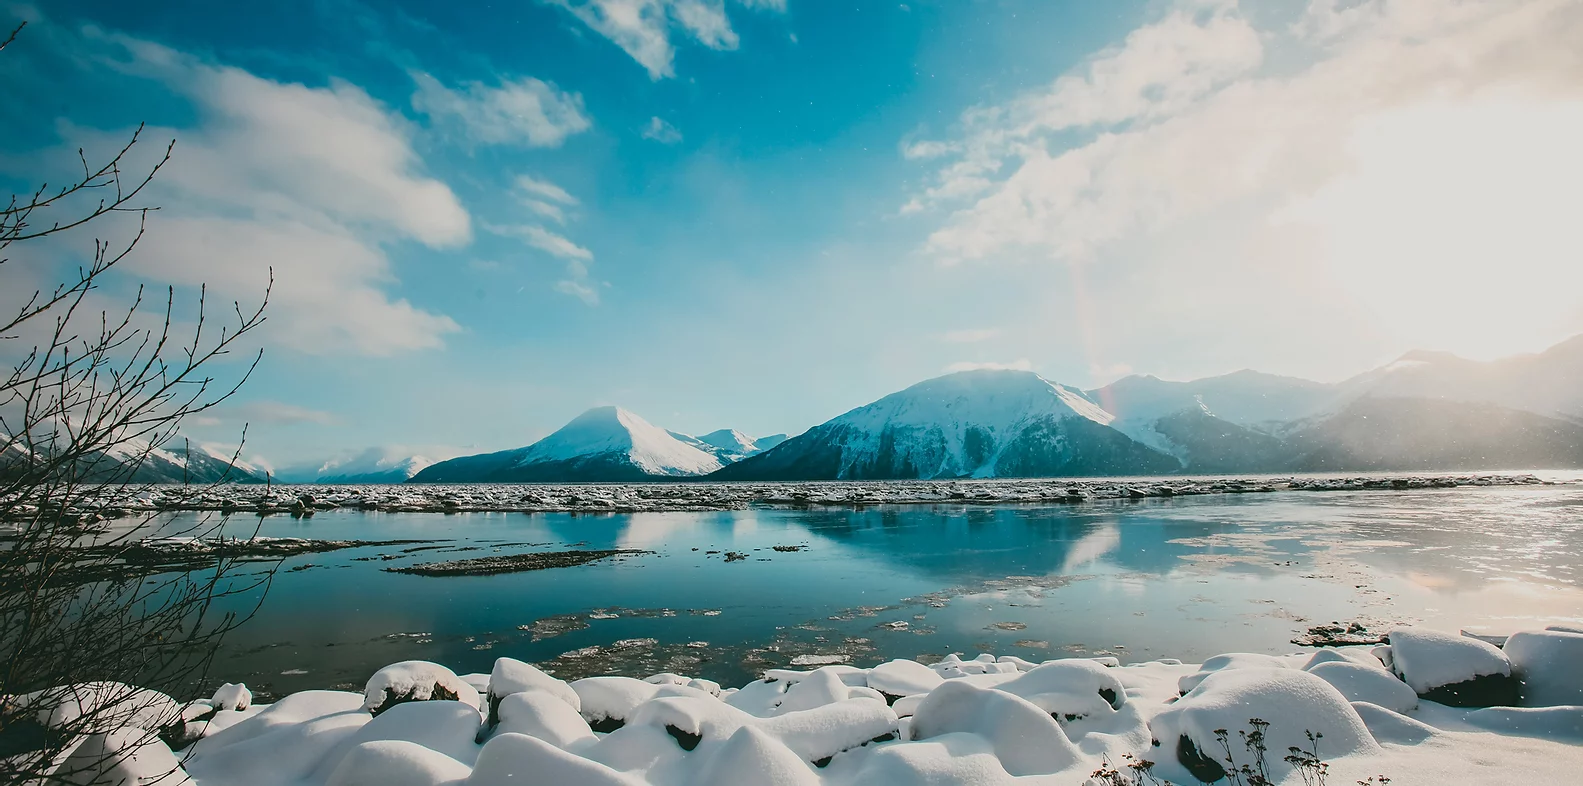 Alaska - Kodiak